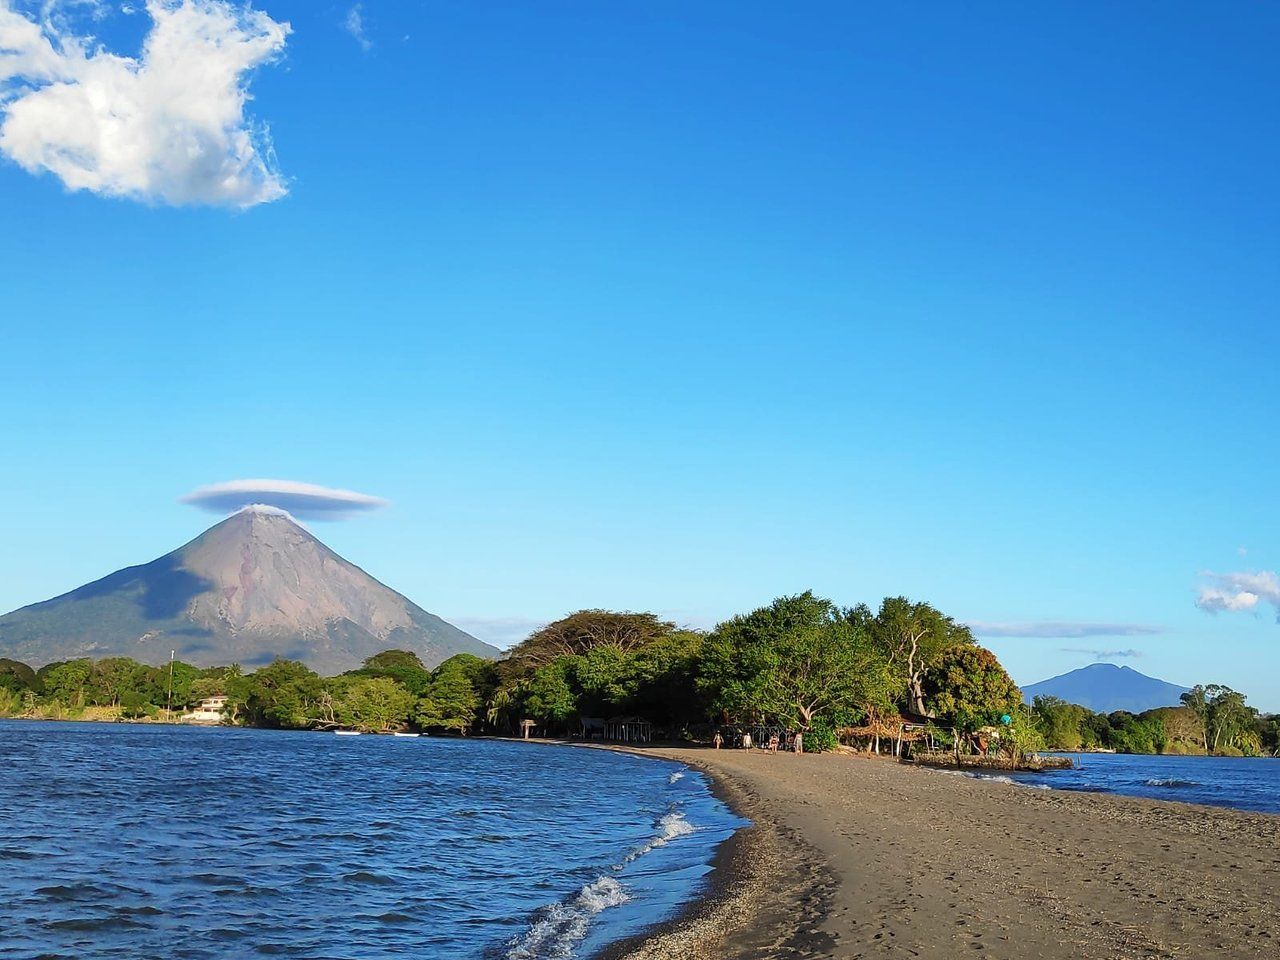 Ontdek de verborgen schoonheid van Punta Jesus Maria in Nicaragua.